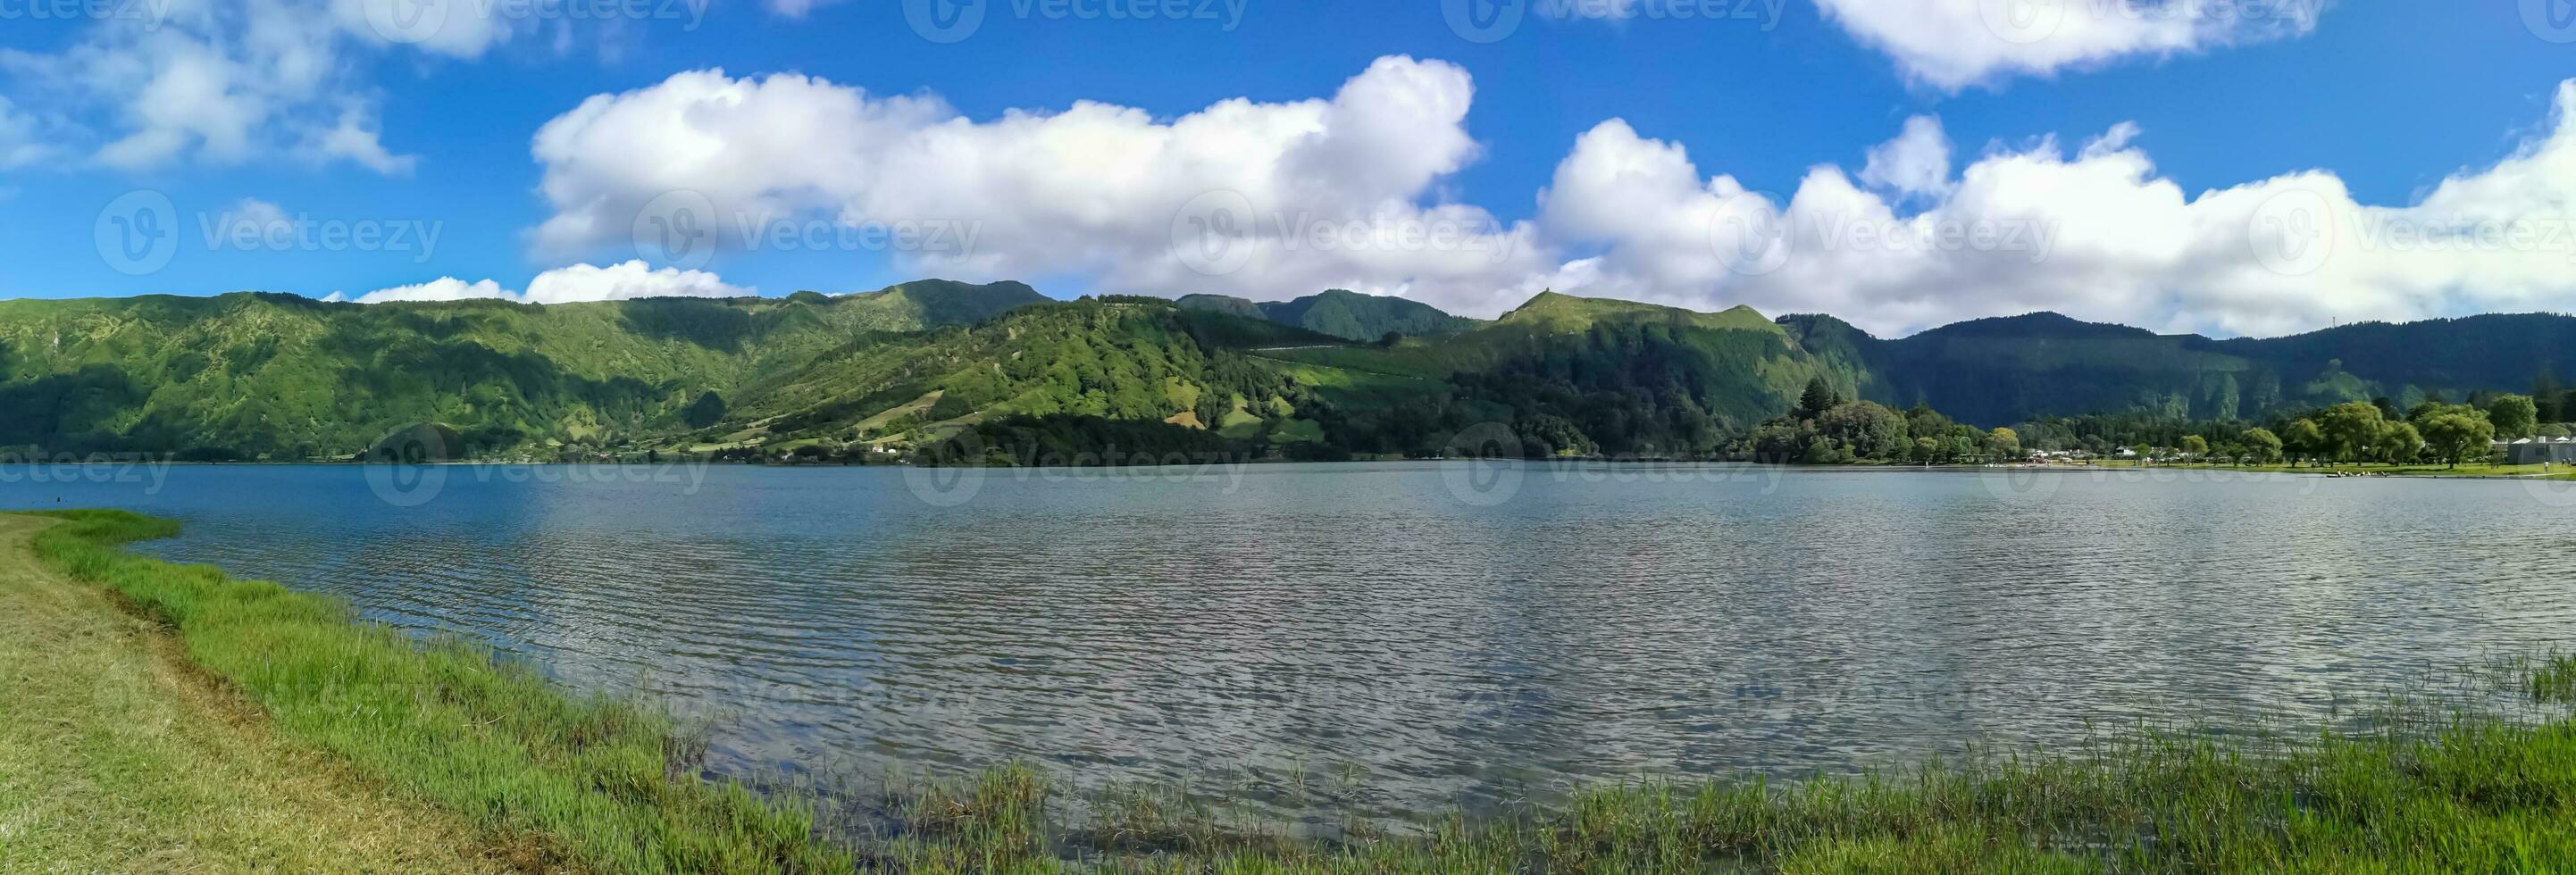 Lagoa das sete cidades ist gelegen auf das Insel von sao miguel, Azoren und ist charakterisiert durch das doppelt Färbung von es ist Gewässer, im Grün und Blau foto